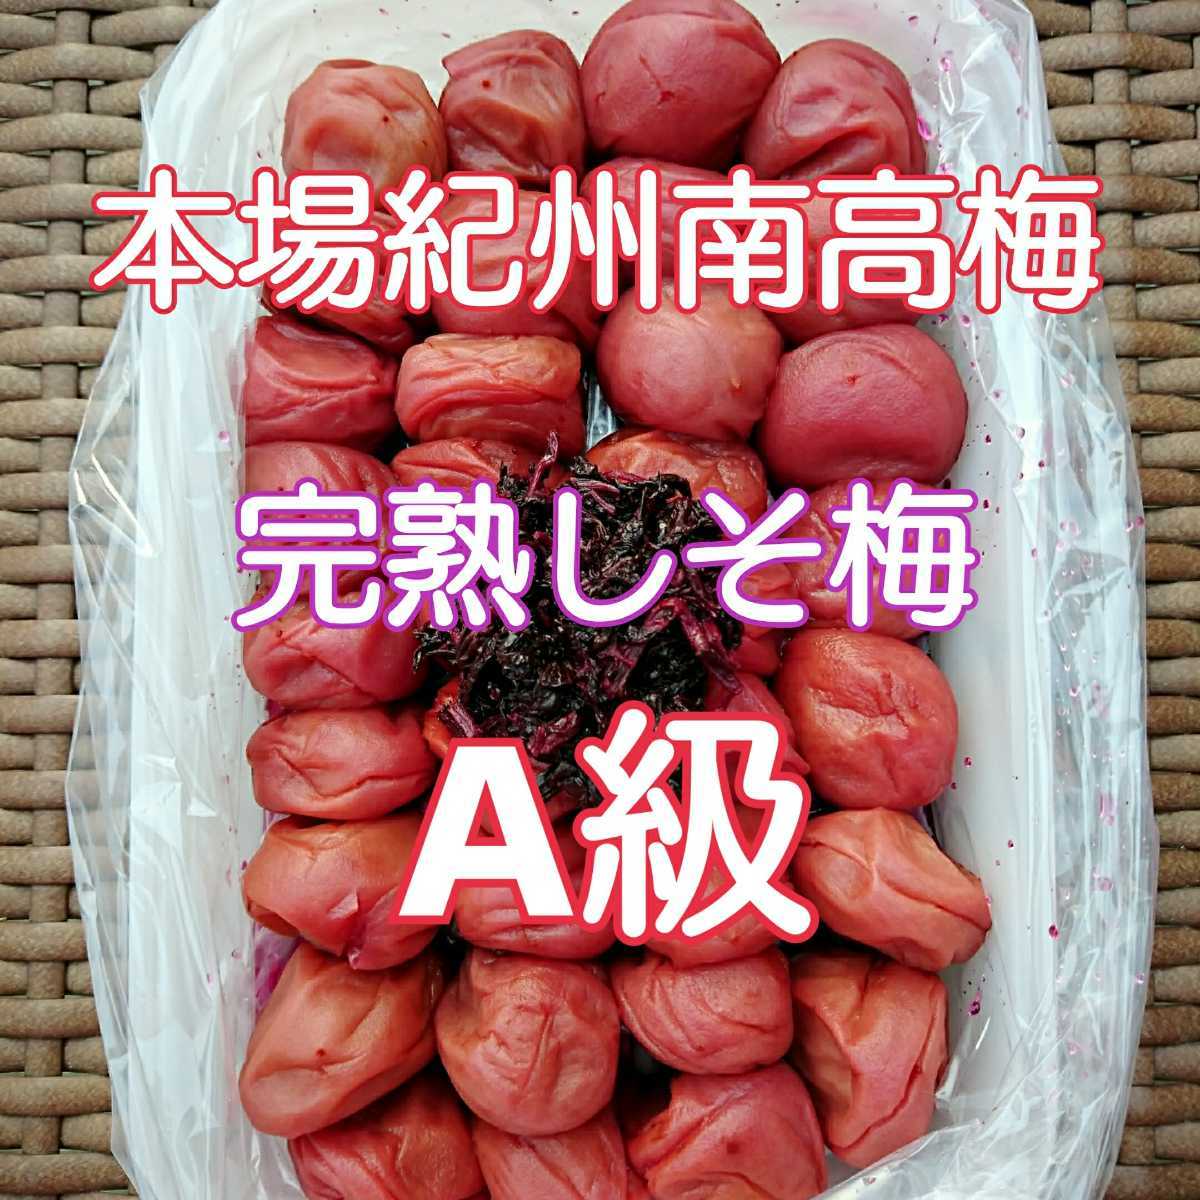 日本一梅の里 本場紀州南高梅完熟しそ梅(A級品)1kgの画像1